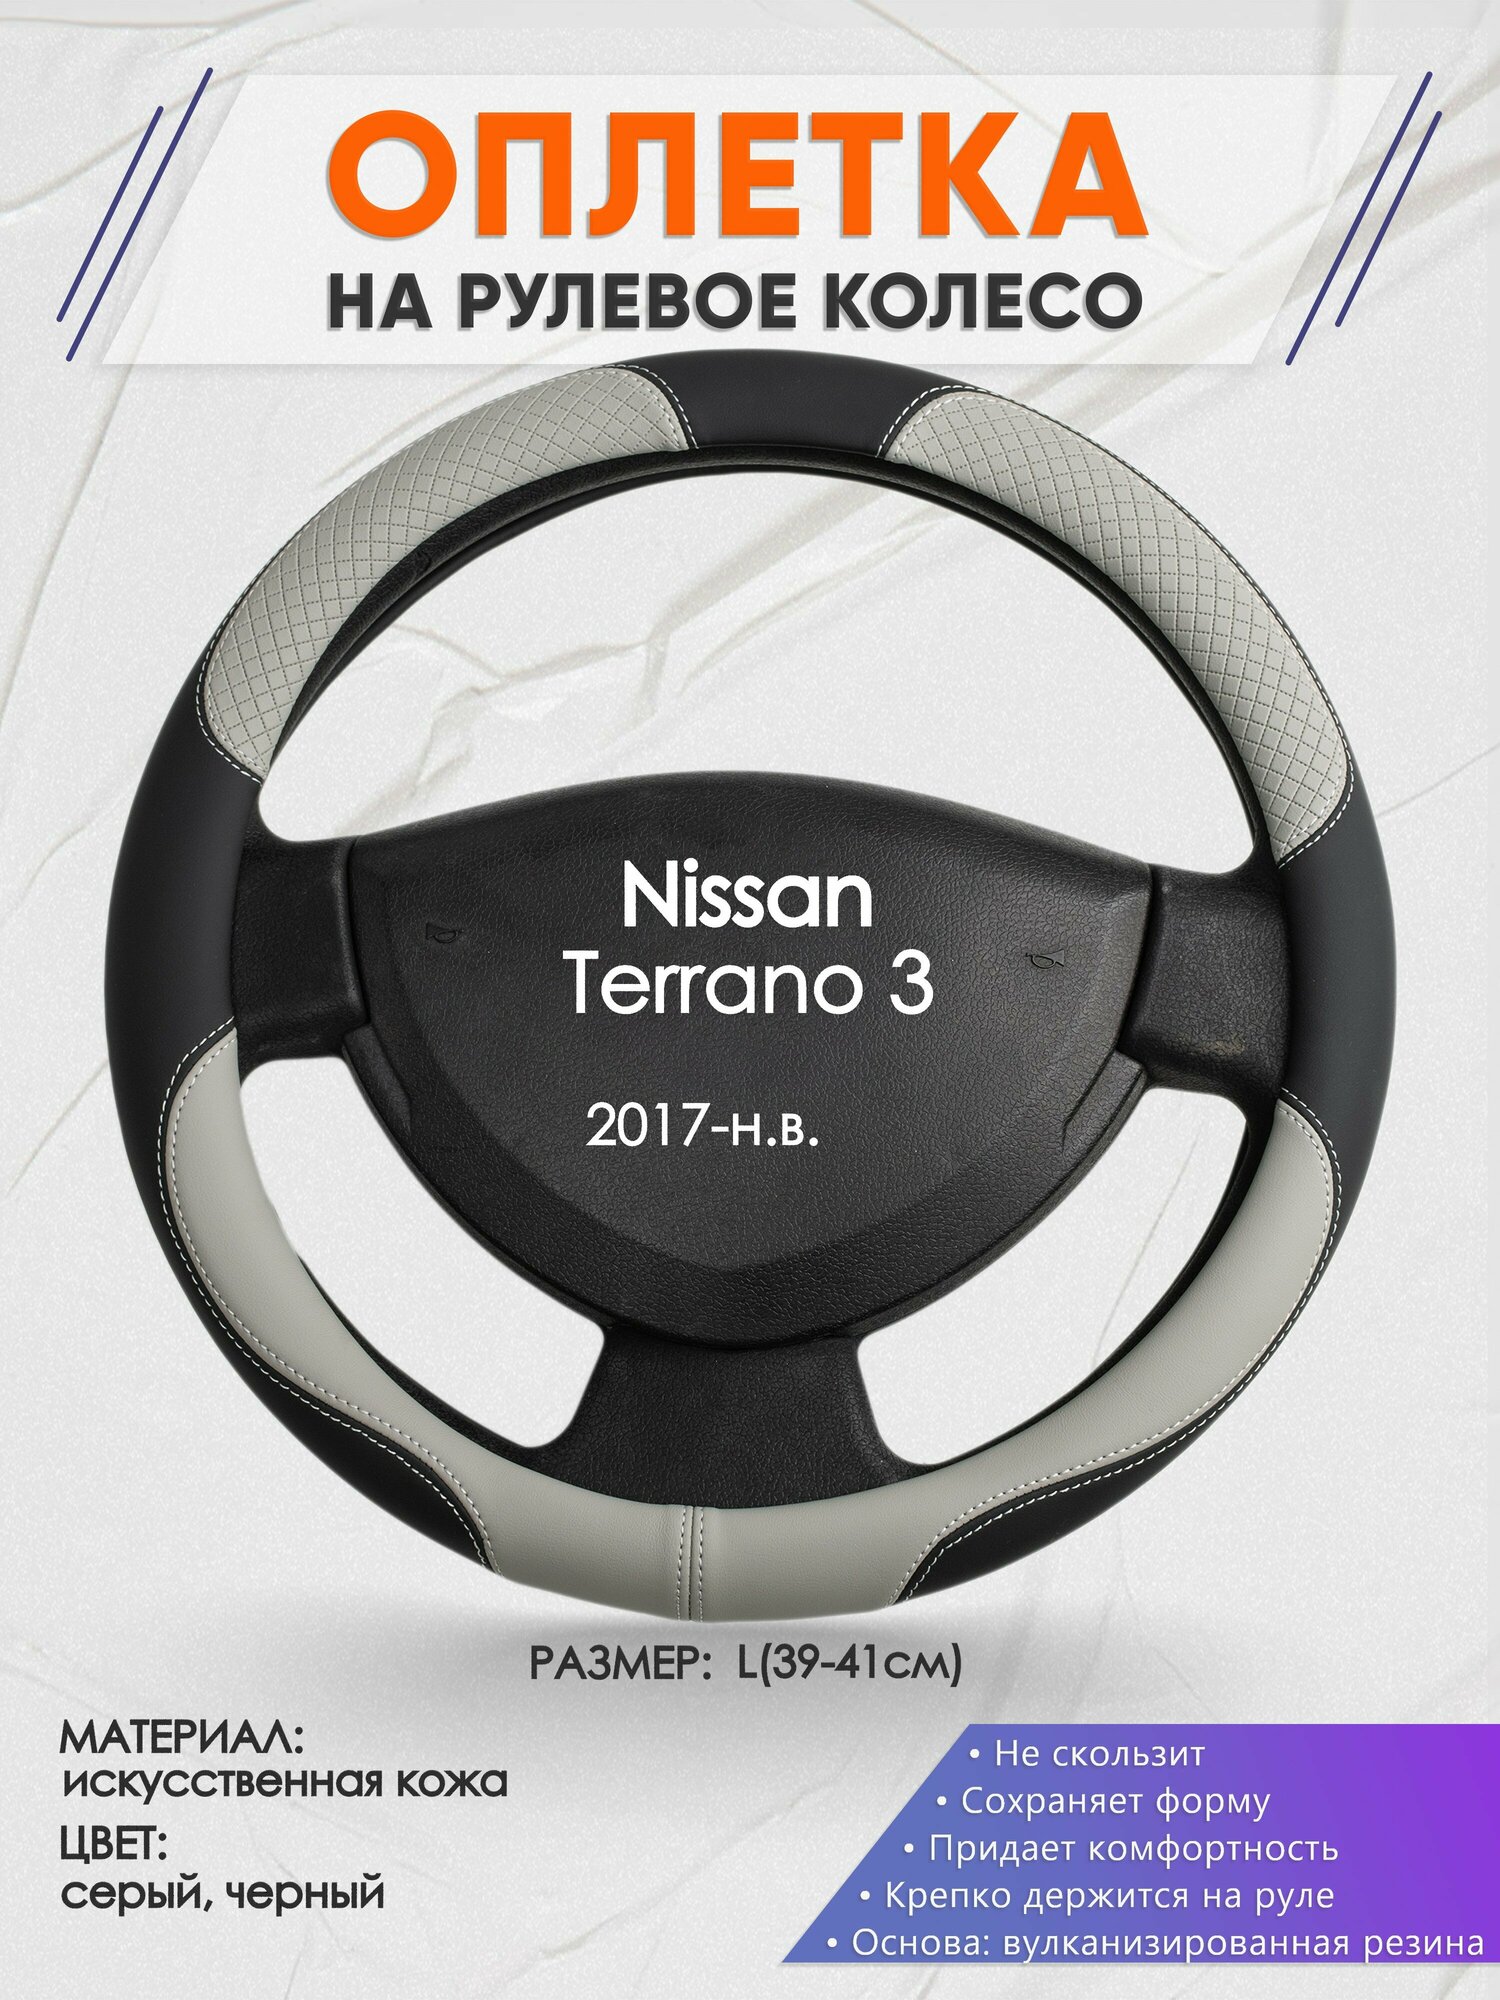 Оплетка на руль для Nissan Terrano 3(Ниссан Террано 3) 2017-н. в, L(39-41см), Искусственная кожа 60